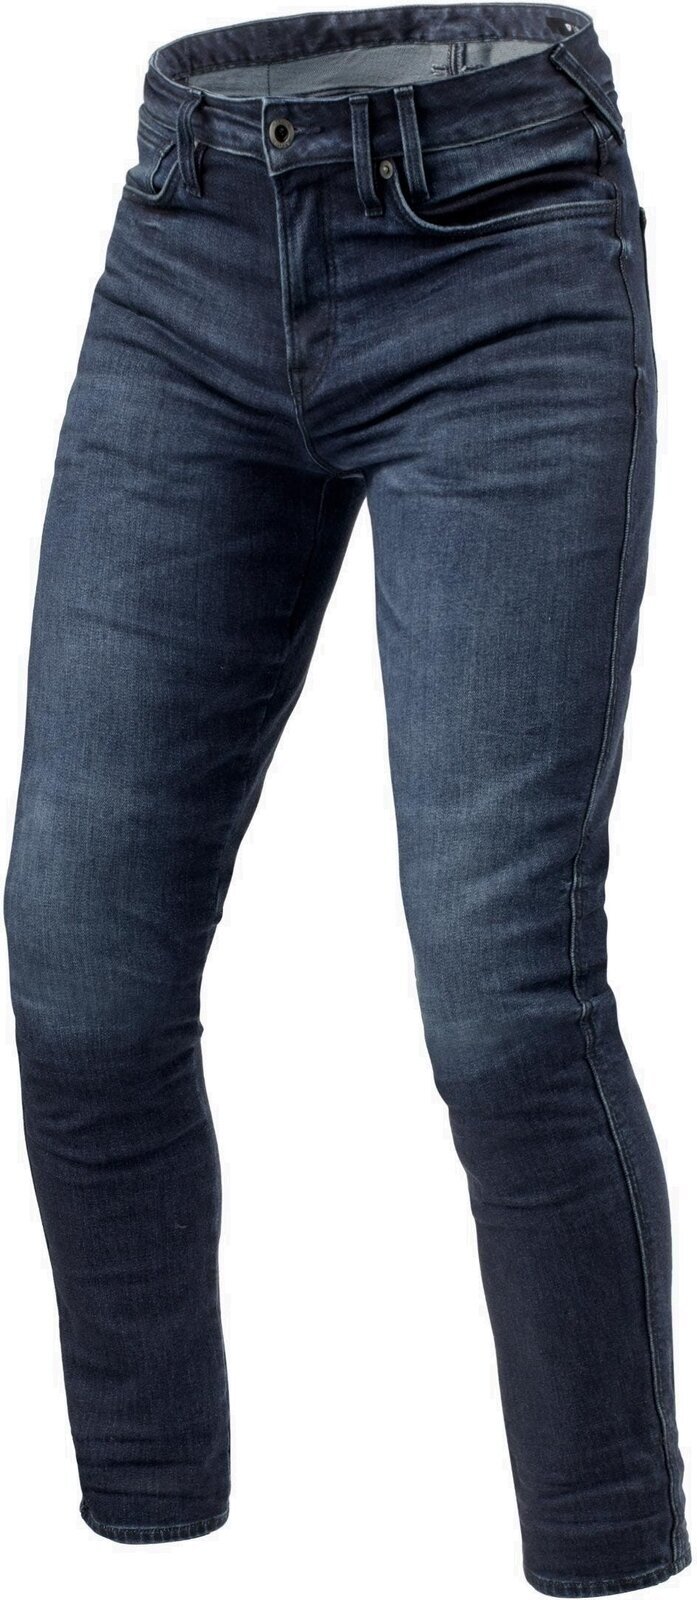 Motoristične jeans hlače Rev'it! Jeans Carlin SK Dark Blue 34/34 Motoristične jeans hlače